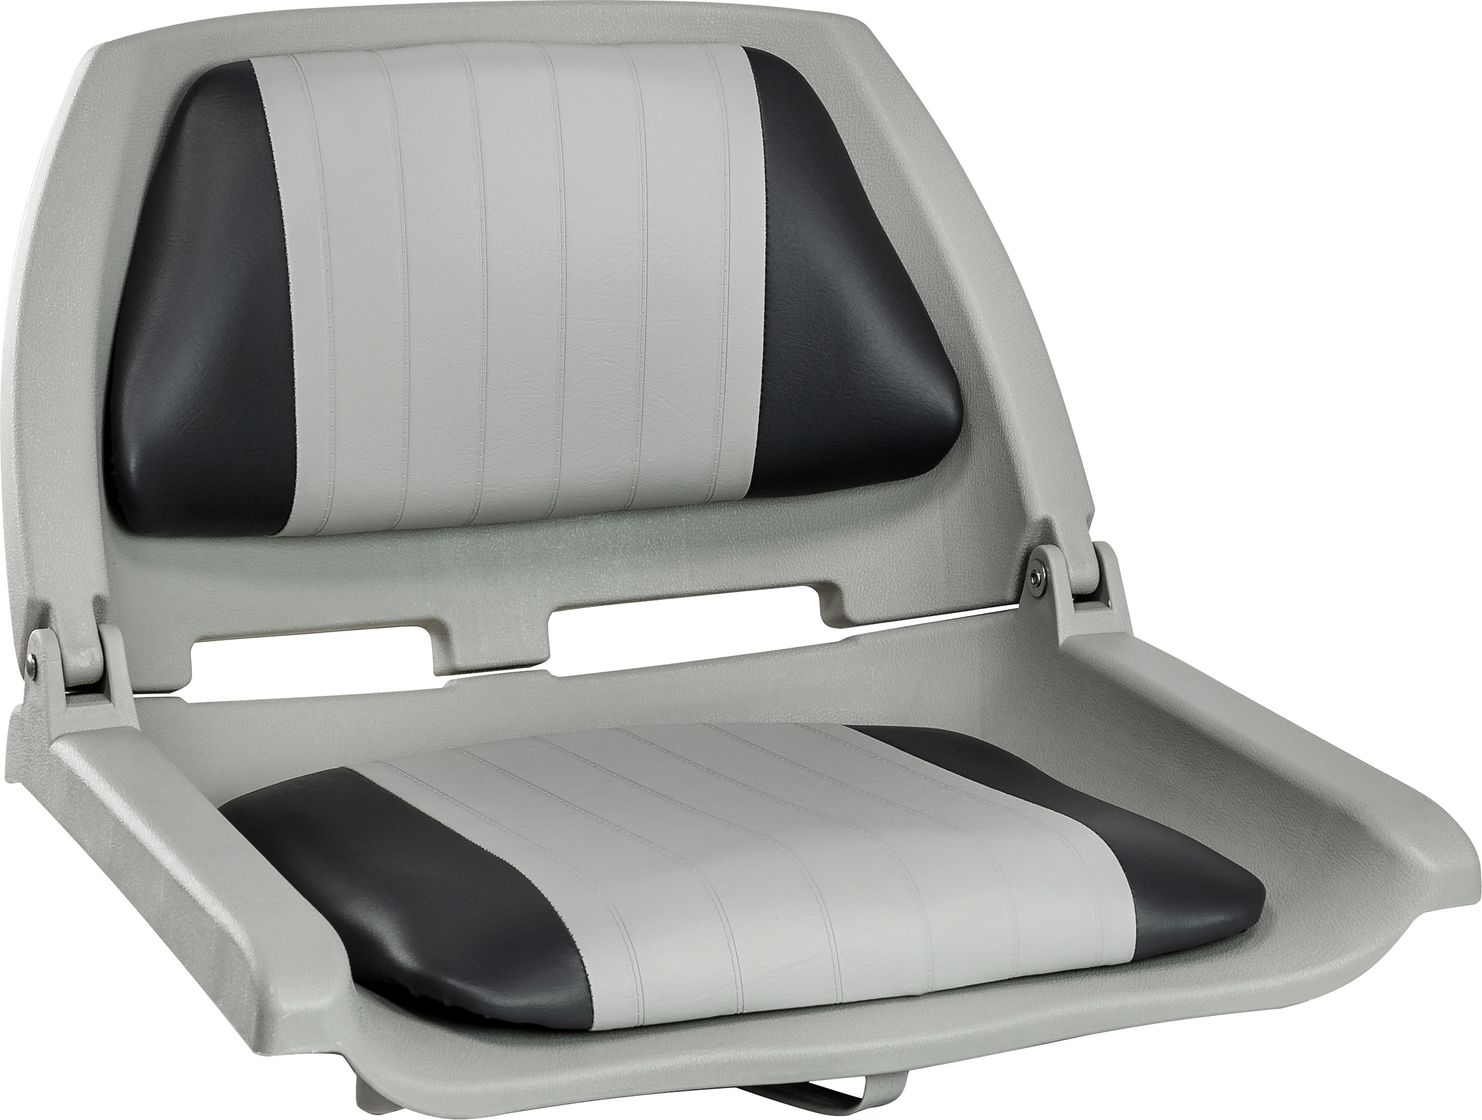 Кресло мягкое складное, обивка винил, цвет серый/угольный, Marine Rocket 75259GC-MR сиденье мягкое bass boat seat серый красный 75132gcr